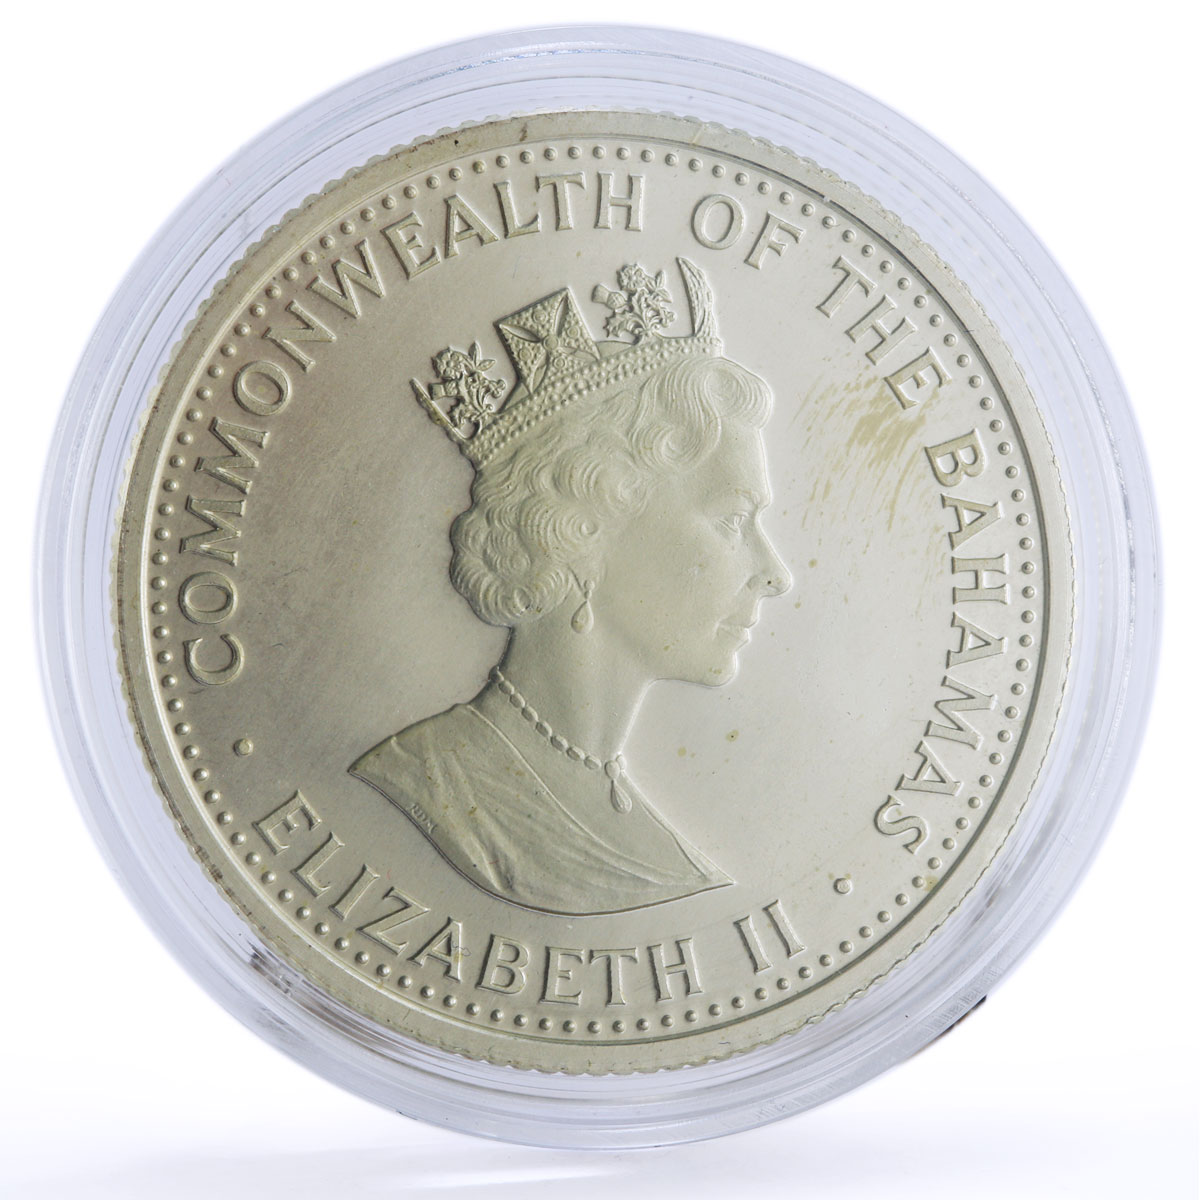 Bahamas 10 dollars Columbus Queen Isabella San Salvador Ship silver coin 1987